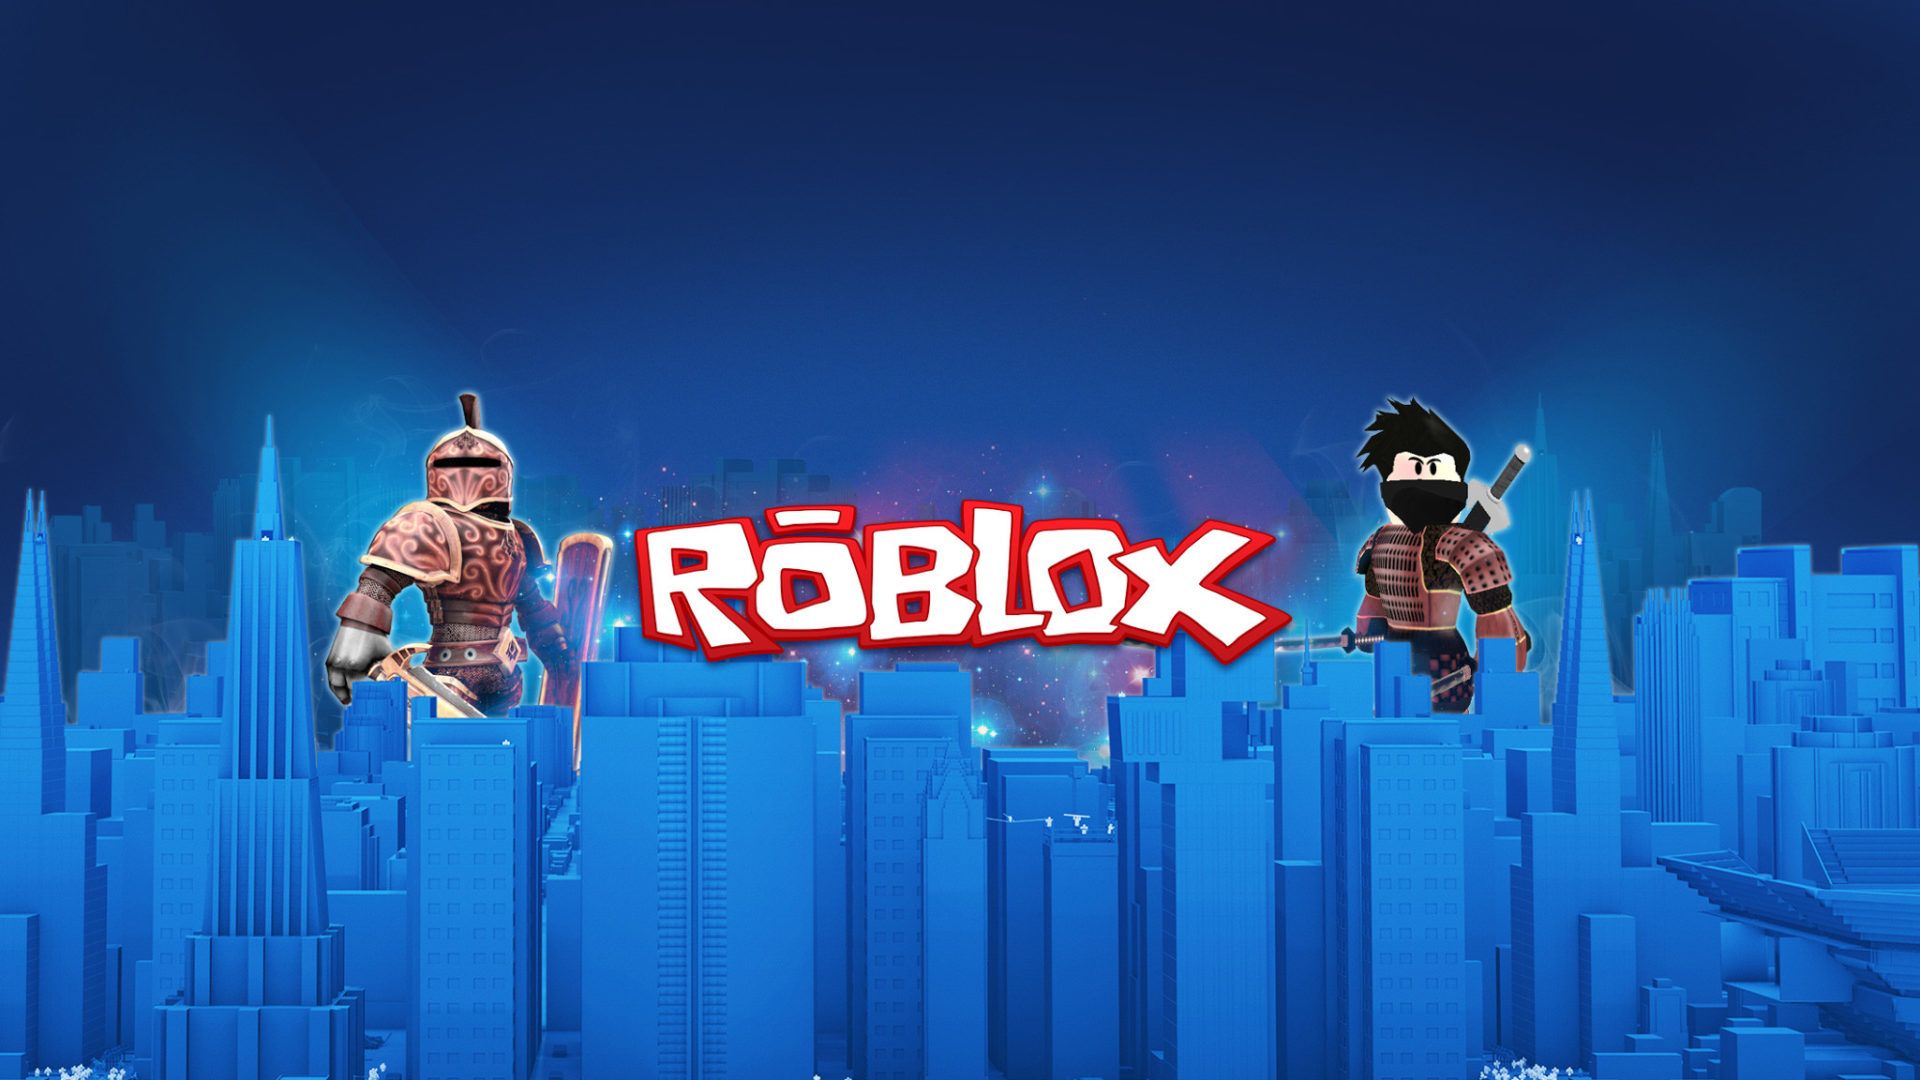 Thiết kế của hình nền mới nhất Roblox gaming wallpapers chắc chắn sẽ làm say mê bất kỳ fan của trò chơi nào. Hình ảnh chất lượng cao của bức hình nền Roblox gaming wallpapers sẽ làm cho thiết bị của bạn trở nên đẹp đẽ hơn bao giờ hết. Tải ngay hình nền Roblox gaming wallpapers để trang trí cho máy tính của mình đi nào!